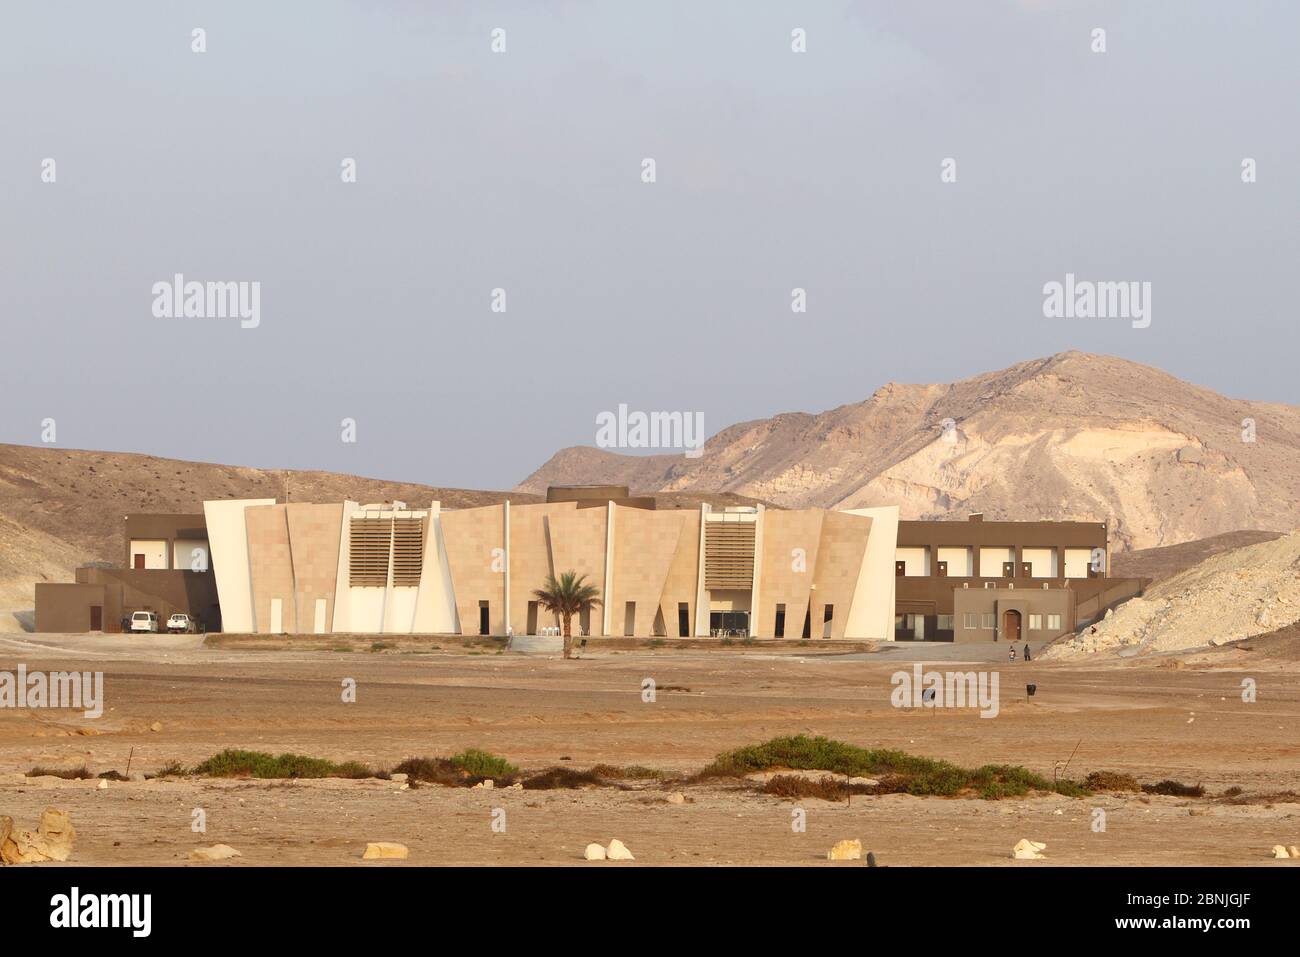 Hôtel-musée conçu pour se fondre dans les montagnes environnantes à Ras Al Jinz Turtle Reserve, une destination touristique populaire, d'Oman, novembre 2012. Banque D'Images